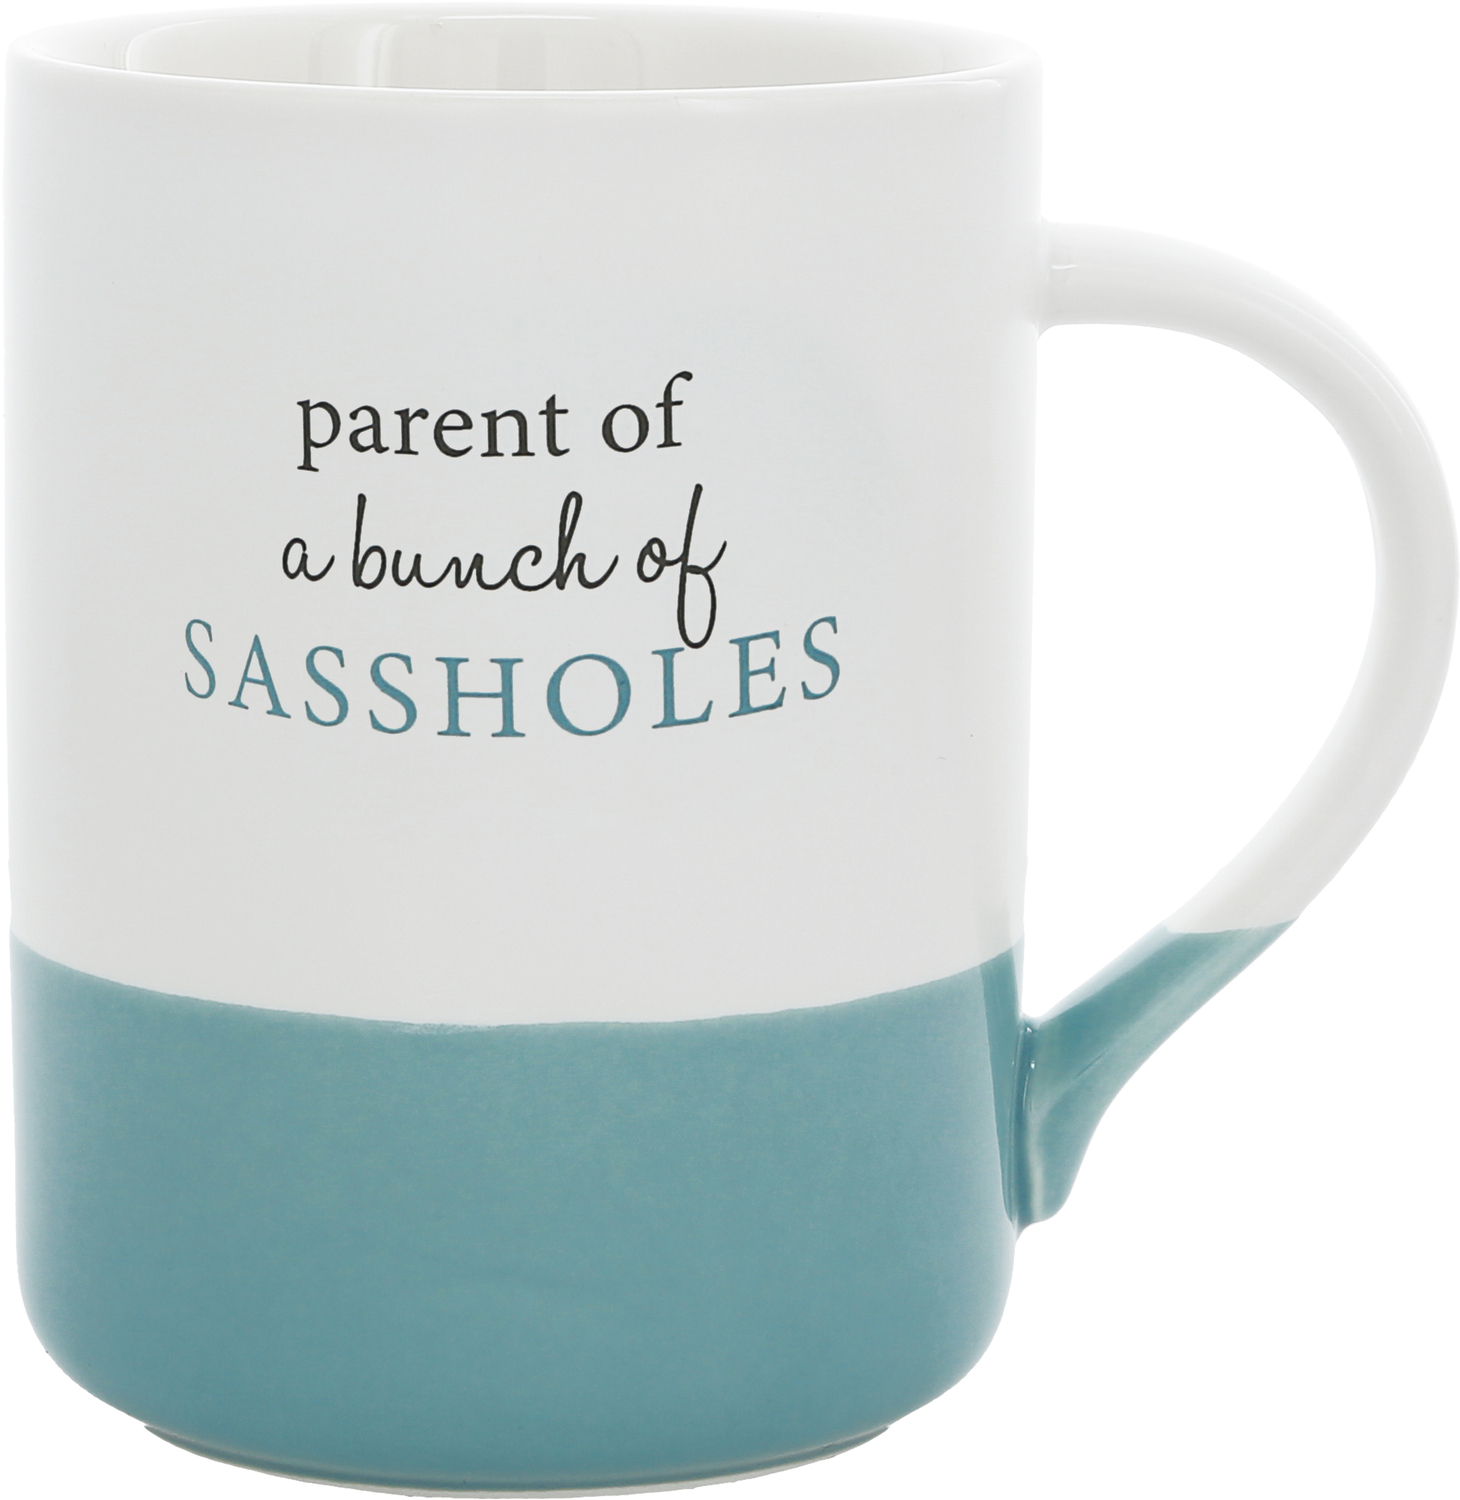 Sassholes by A-Parent-ly - Sassholes - 18 oz Mug